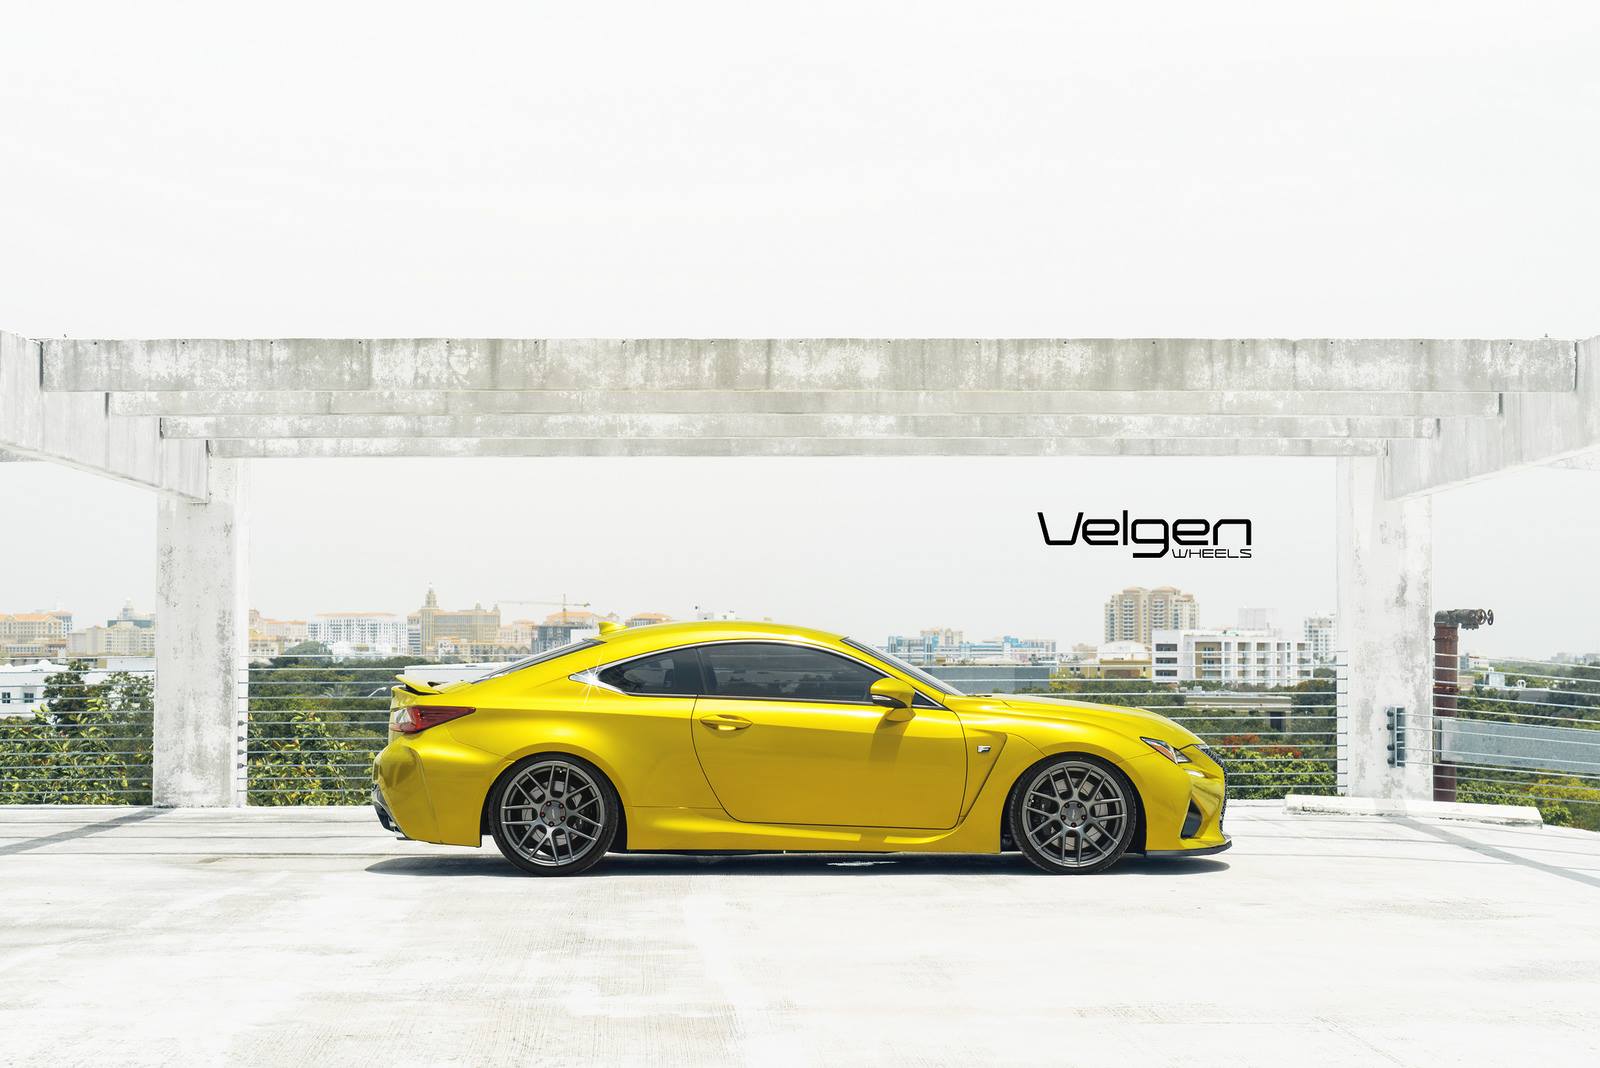 Желтый Lexus RC F на великолепных дисках Velgen